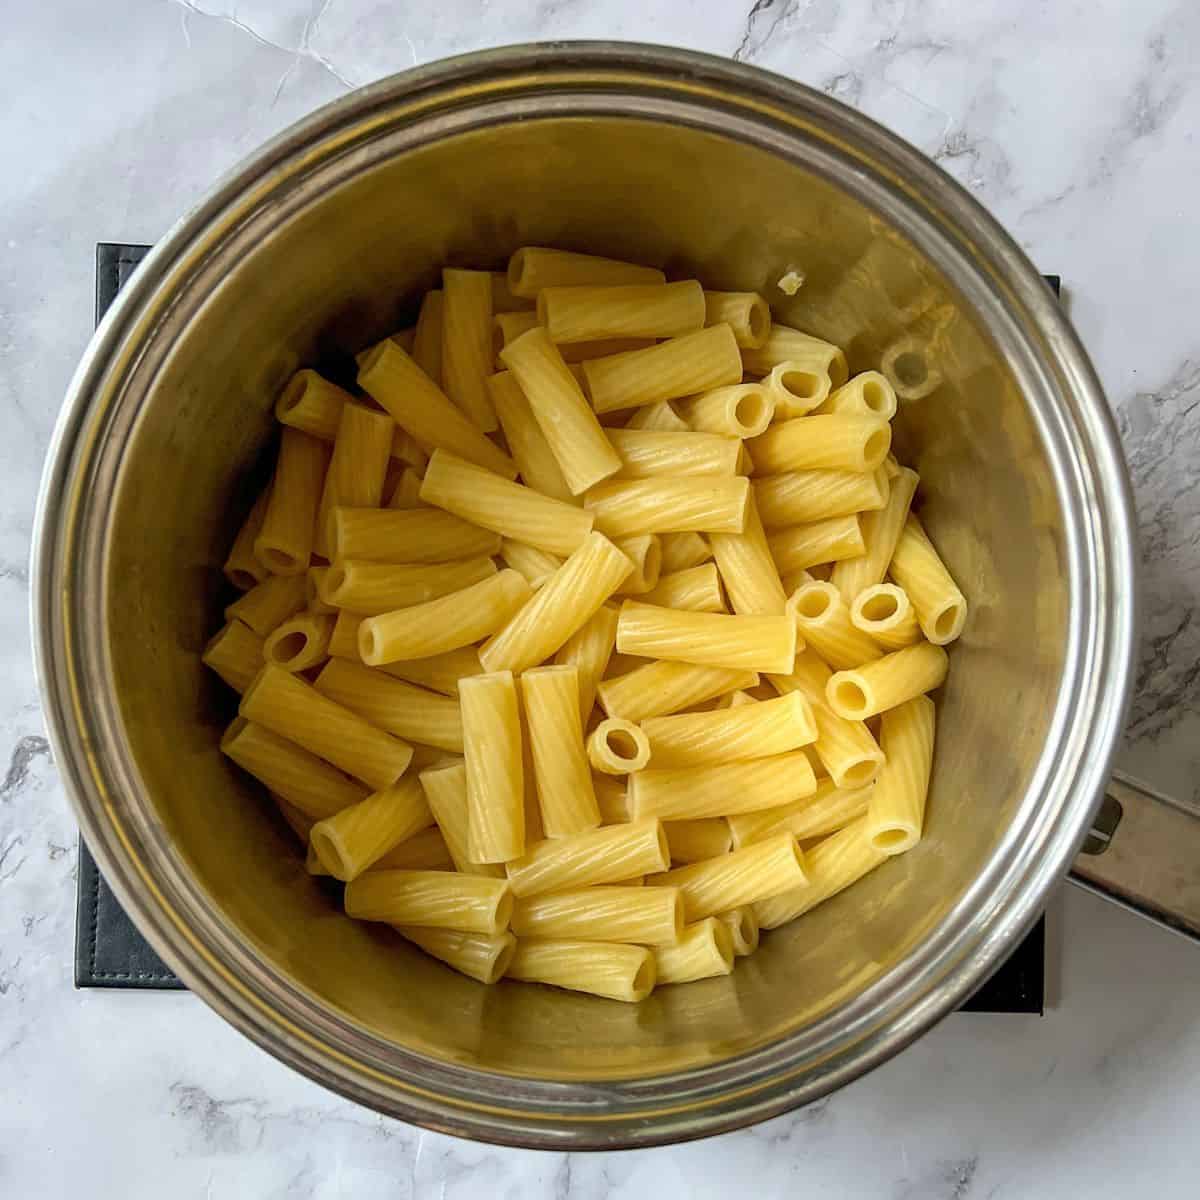 Rigatoni pasta in a saucepan.